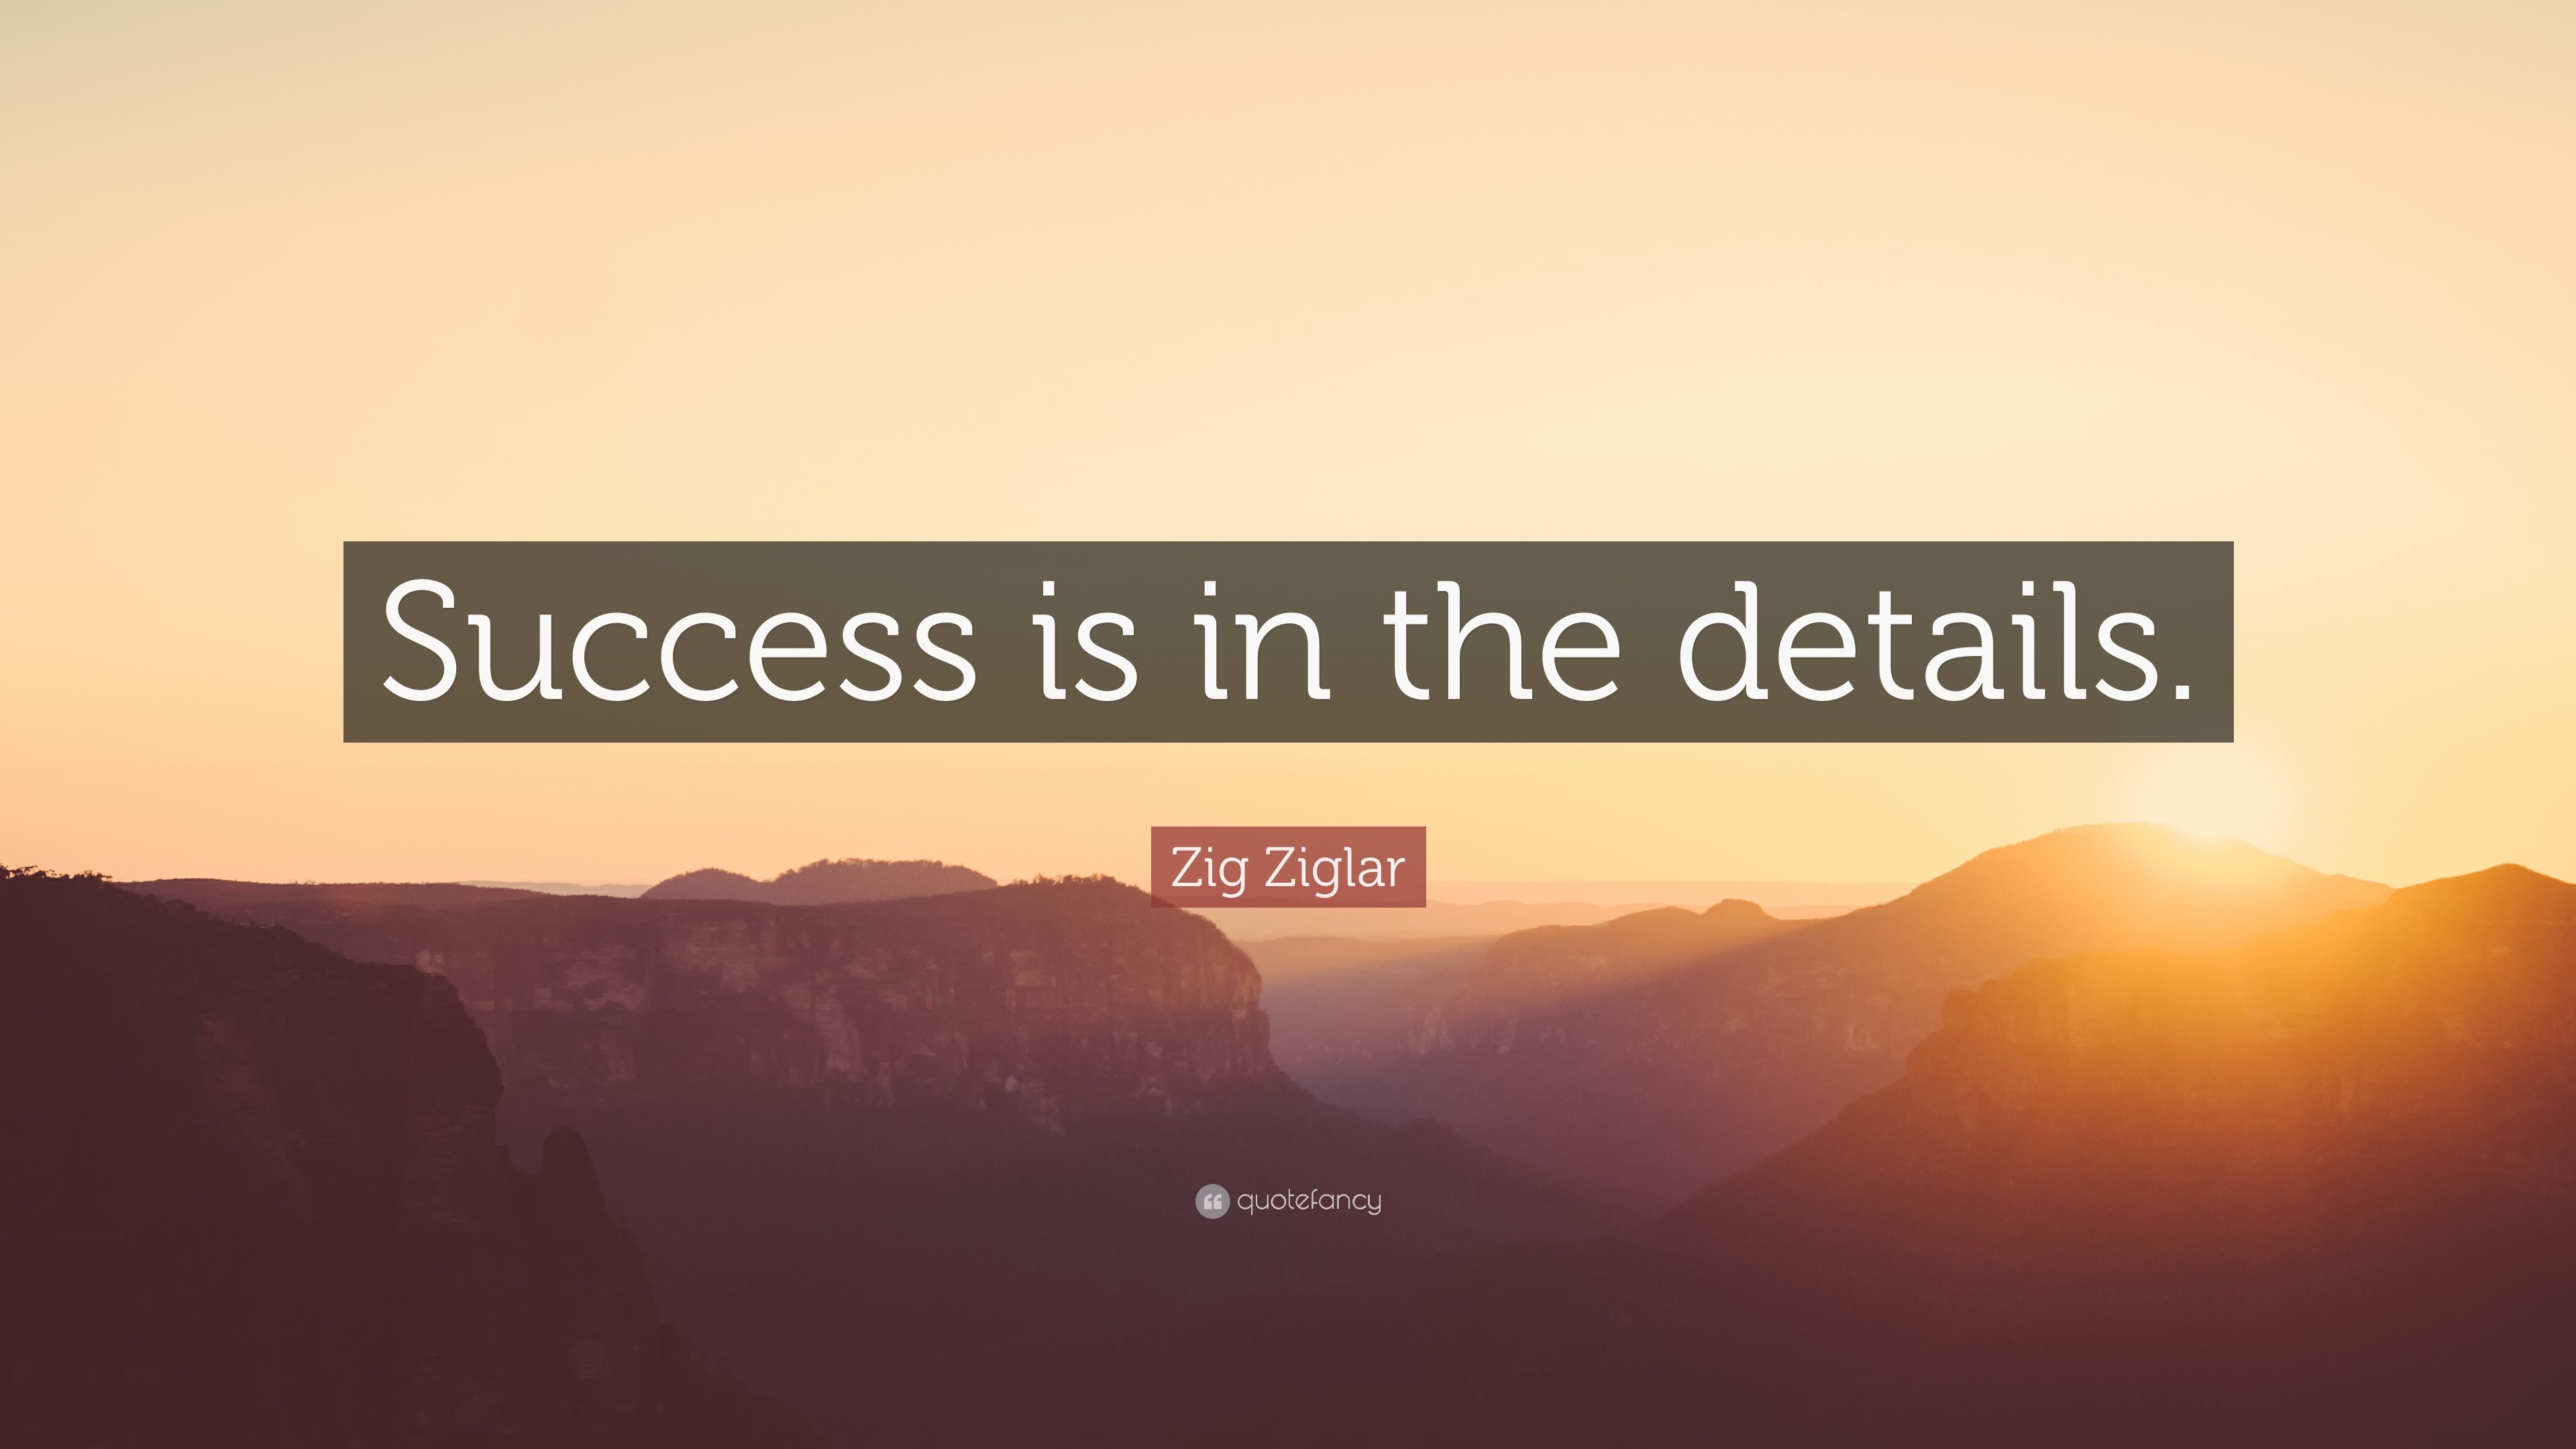 Zig Ziglar Quote: “Success is in the details.” (12 wallpaper)